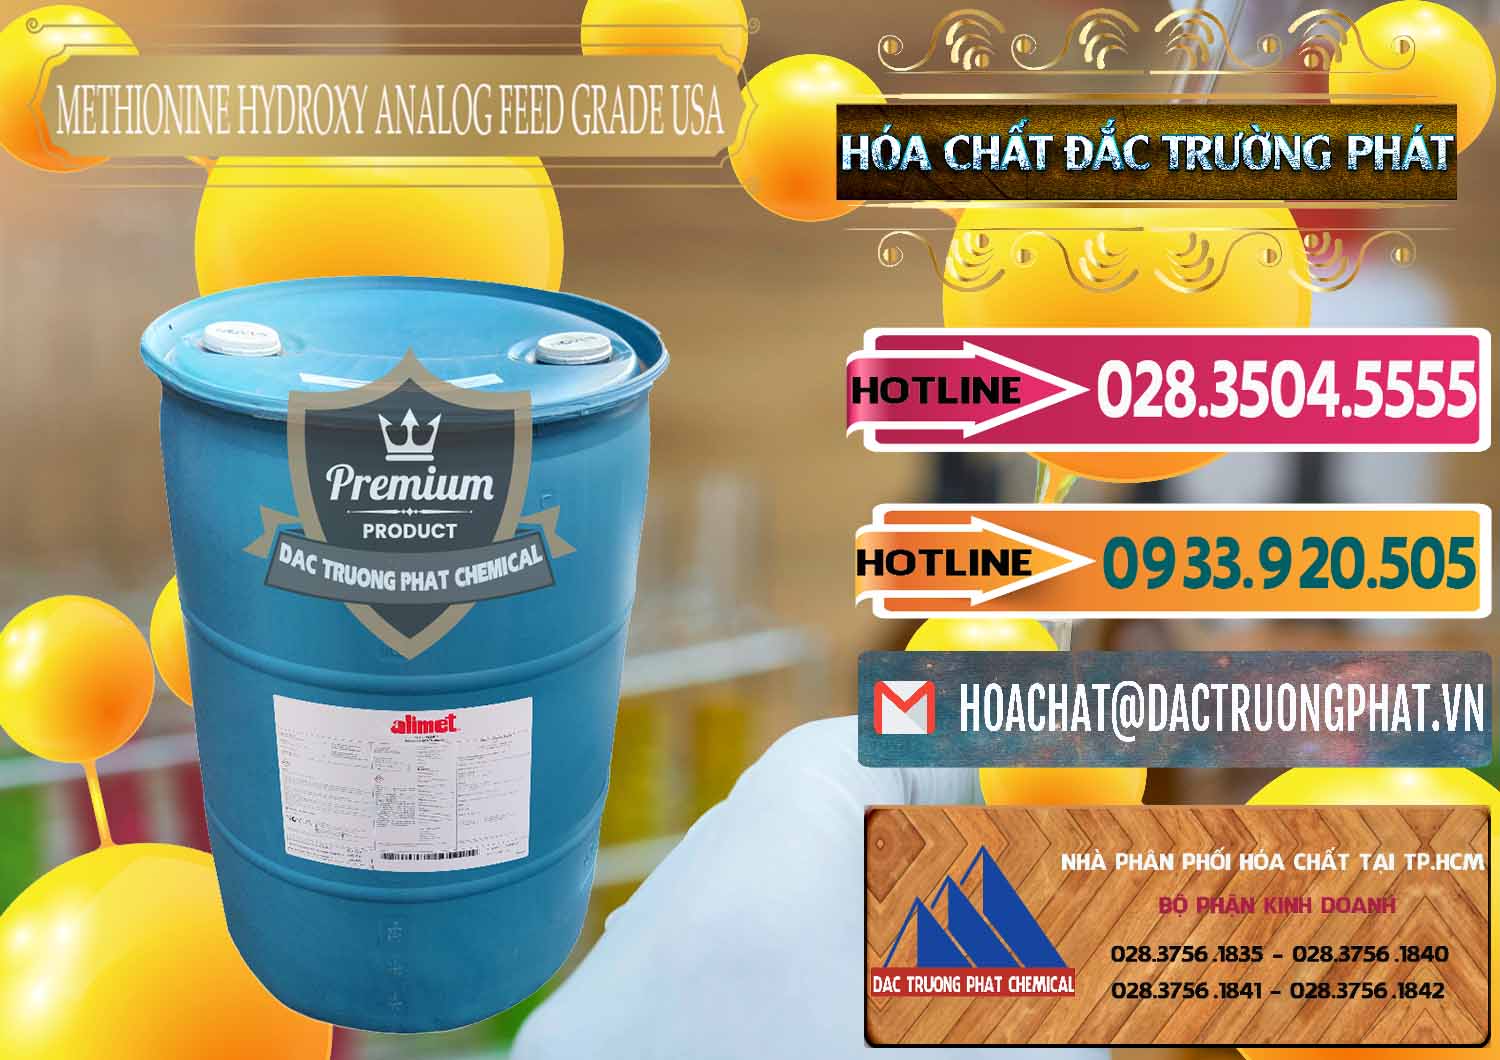 Công ty bán ( cung ứng ) Methionine Nước - Dạng Lỏng Novus Alimet Mỹ USA - 0316 - Công ty chuyên kinh doanh - cung cấp hóa chất tại TP.HCM - dactruongphat.vn